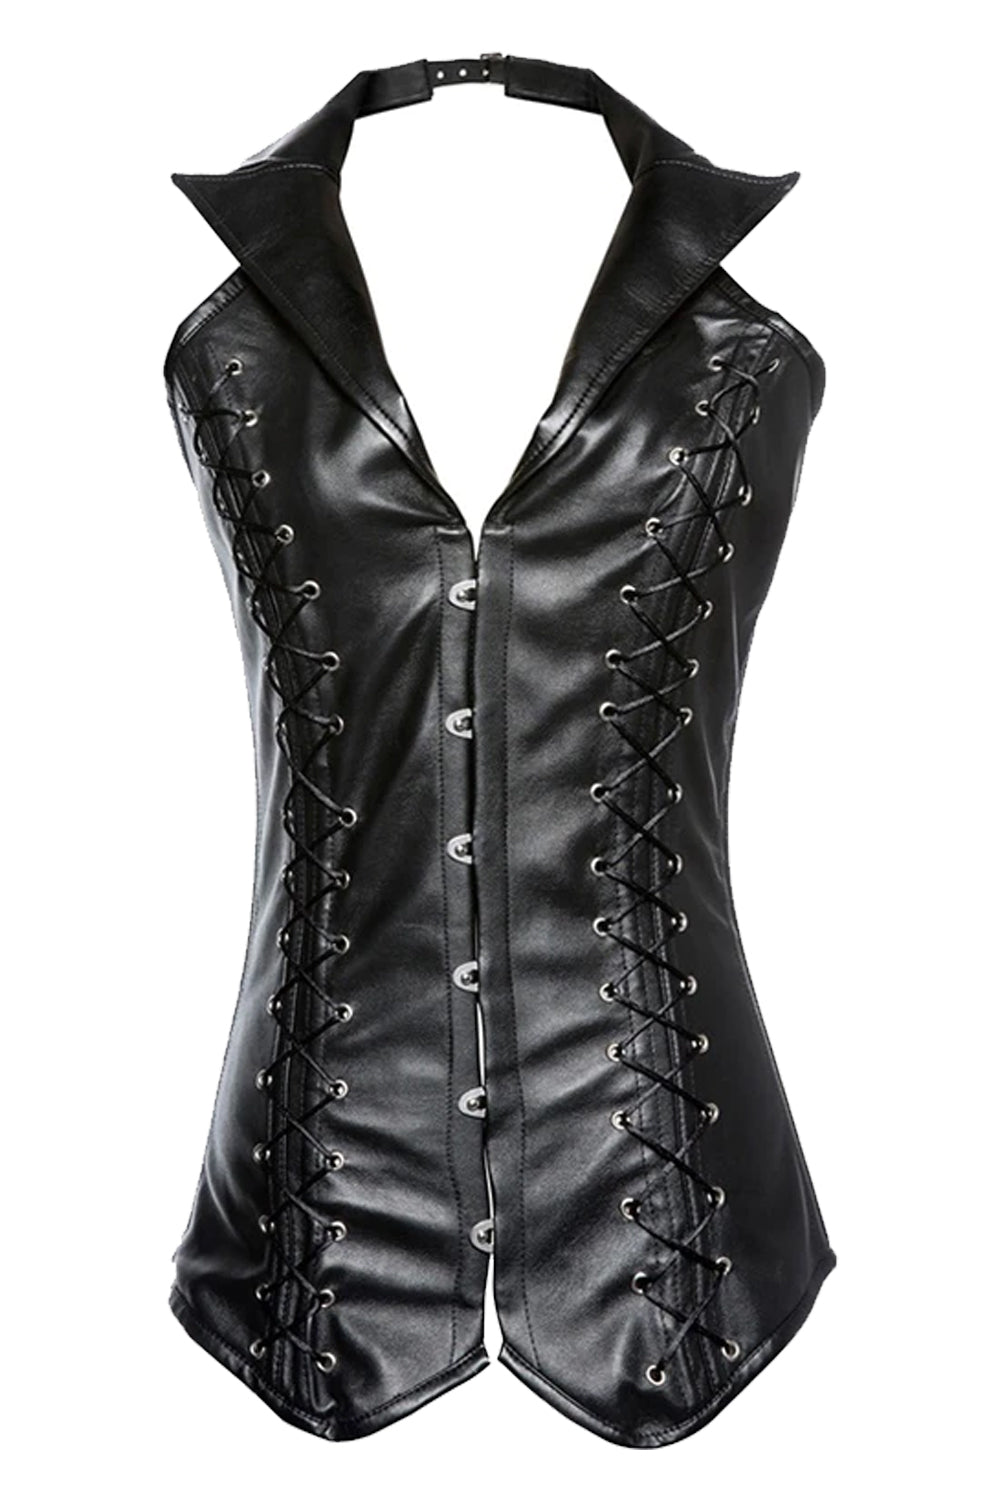 Atomic Black Gothic Faux Leather Vest Corset